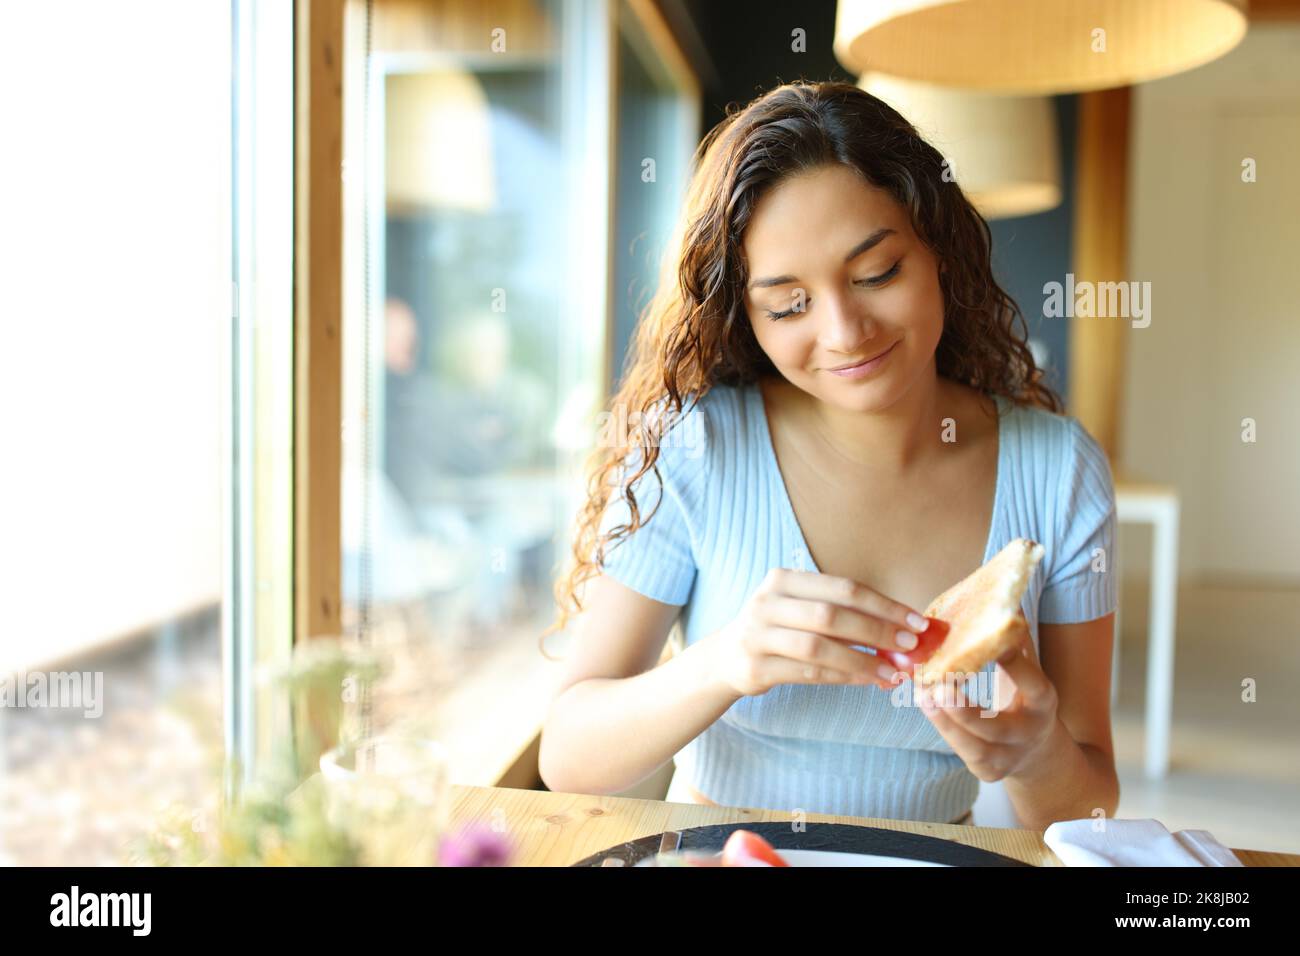 Vue de face d'une femme heureuse qui répandait de la tomate sur du pain assis dans un restaurant Banque D'Images